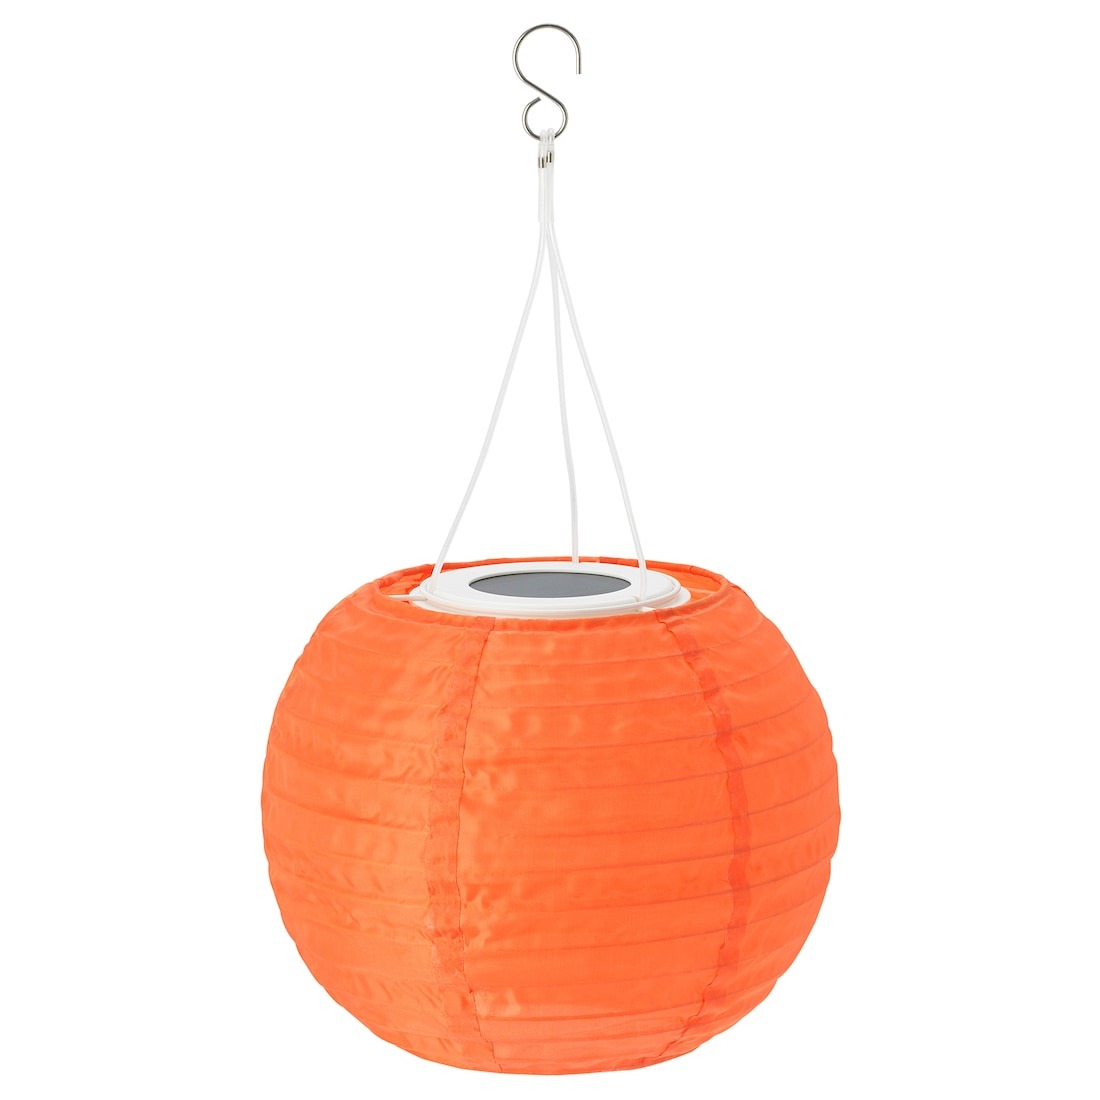 【IKEA Original】SOLVINDEN -ソルヴィンデン- LED太陽電池式ペンダントランプ 屋外用 球形 オレンジ 22 cm画像